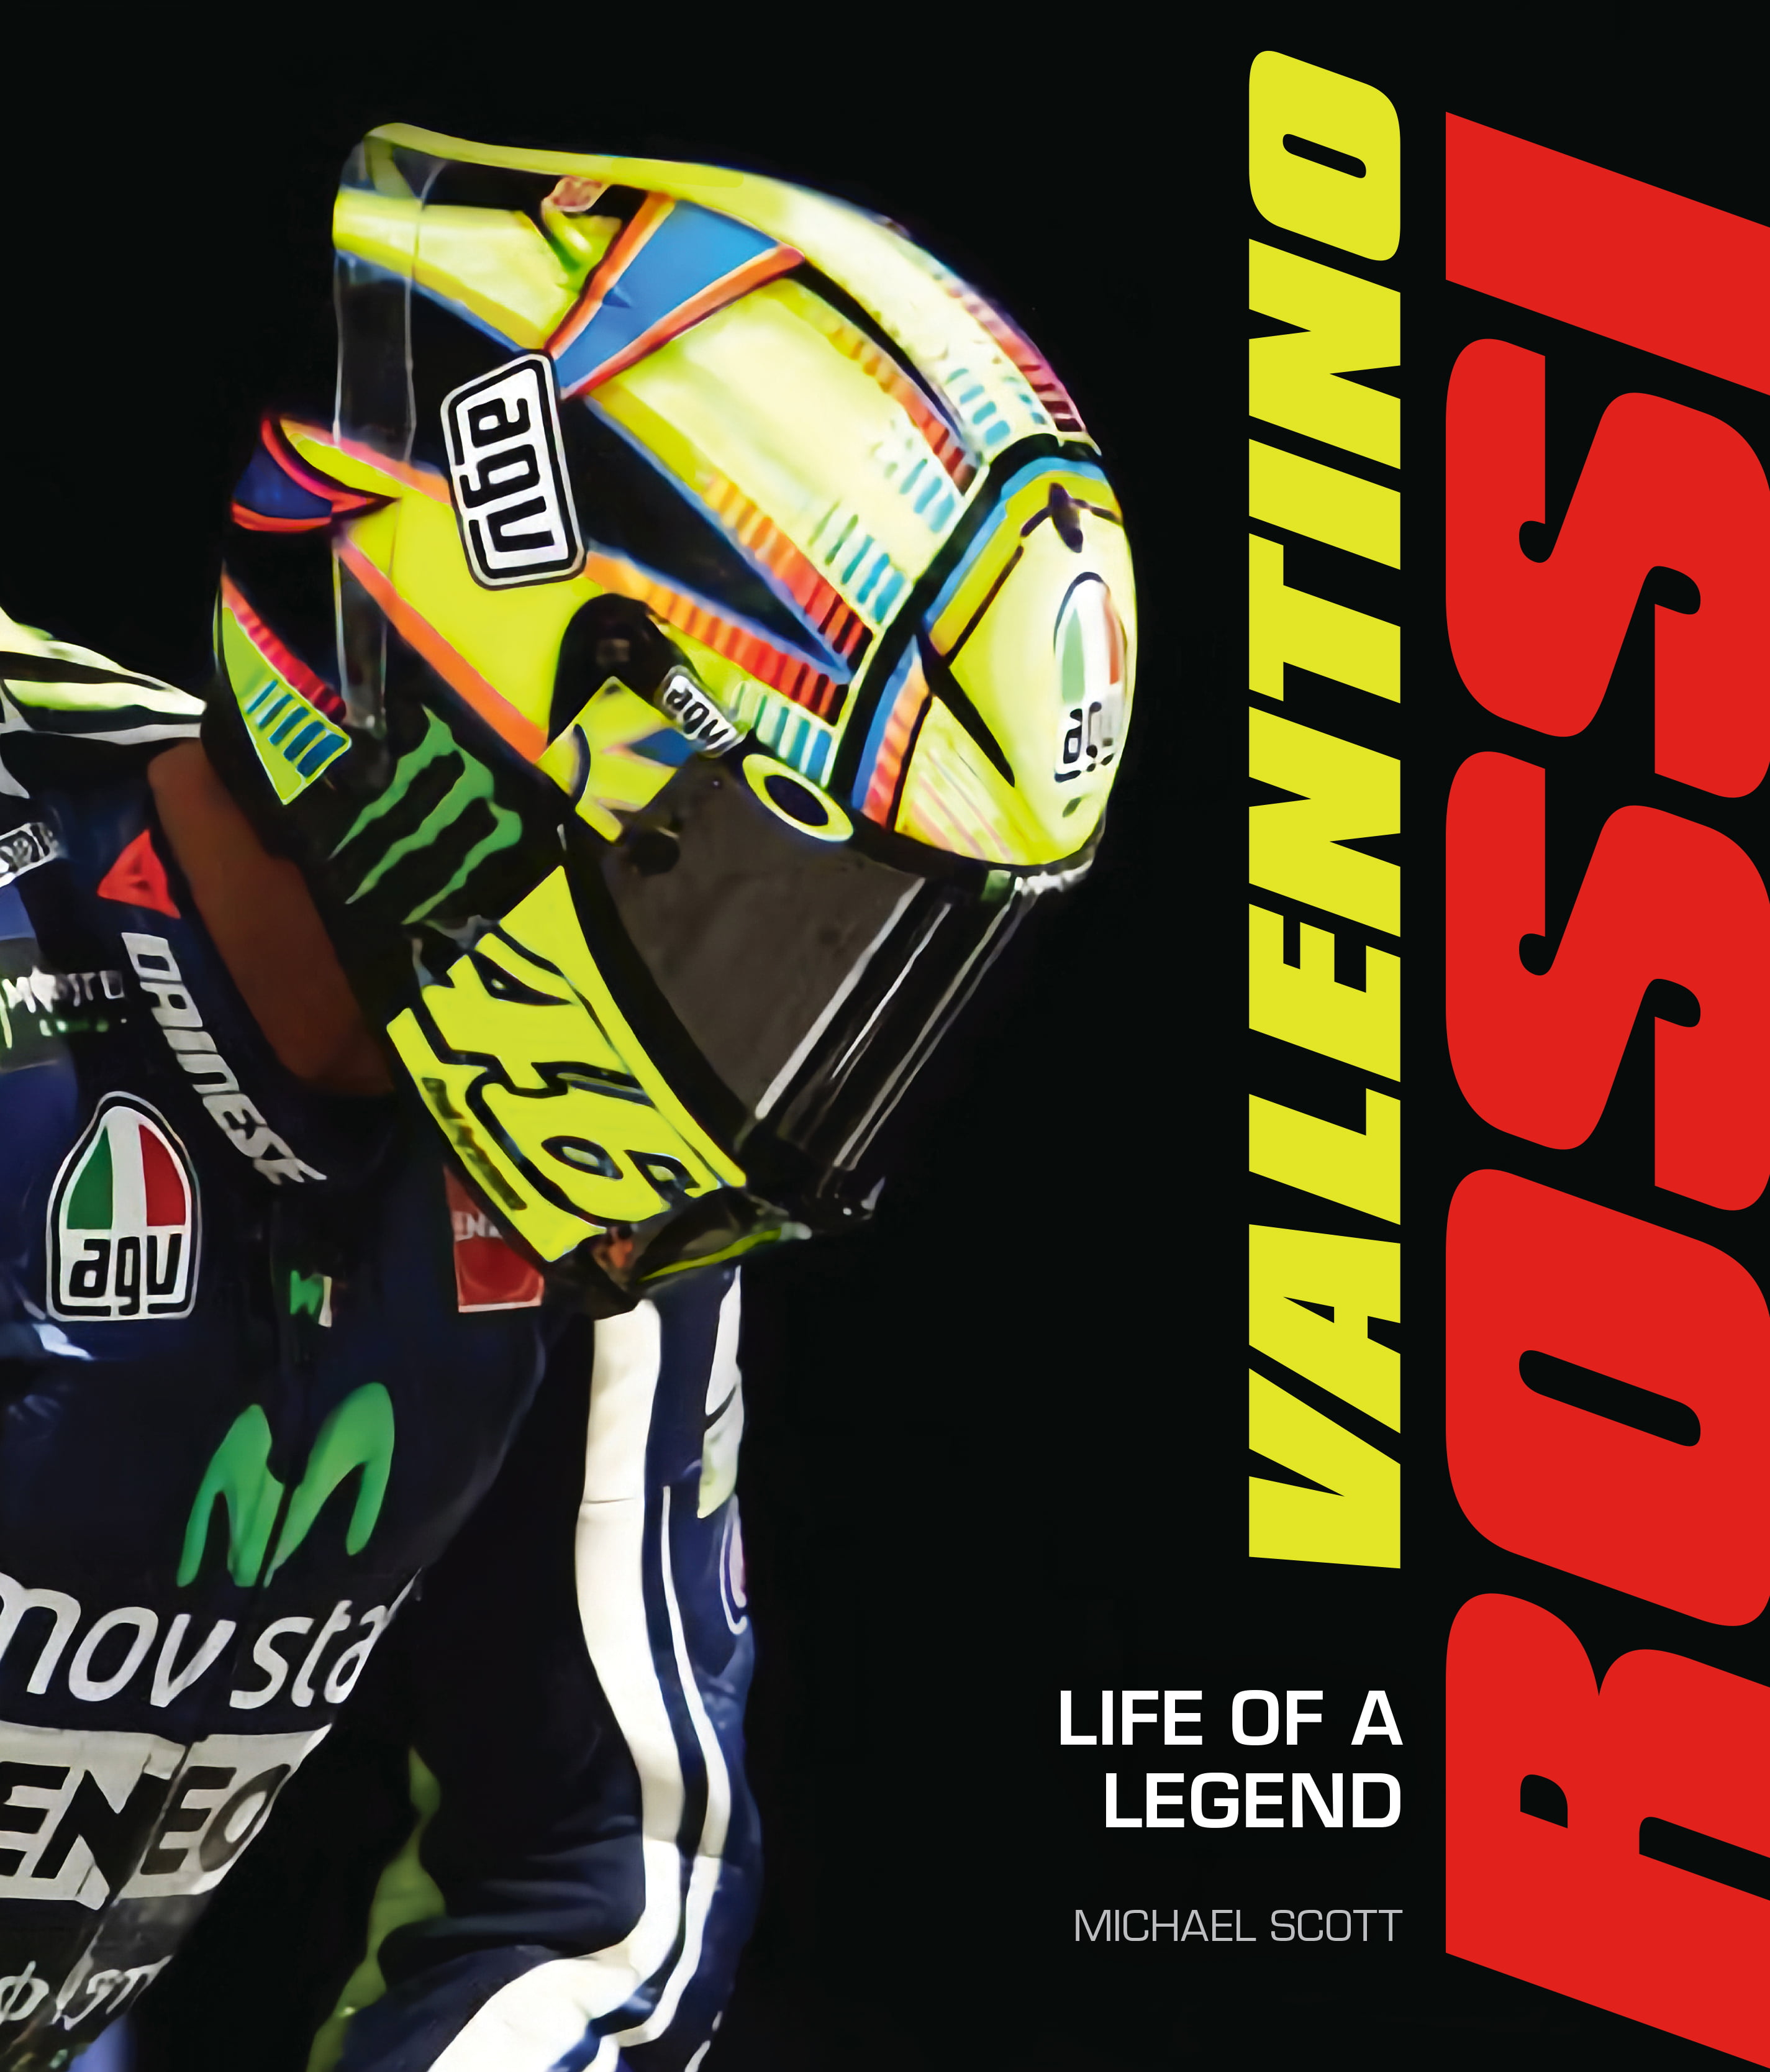 Generelt sagt rester Mobilisere Valentino Rossi : Life of a Legend (Hardcover) - Walmart.com